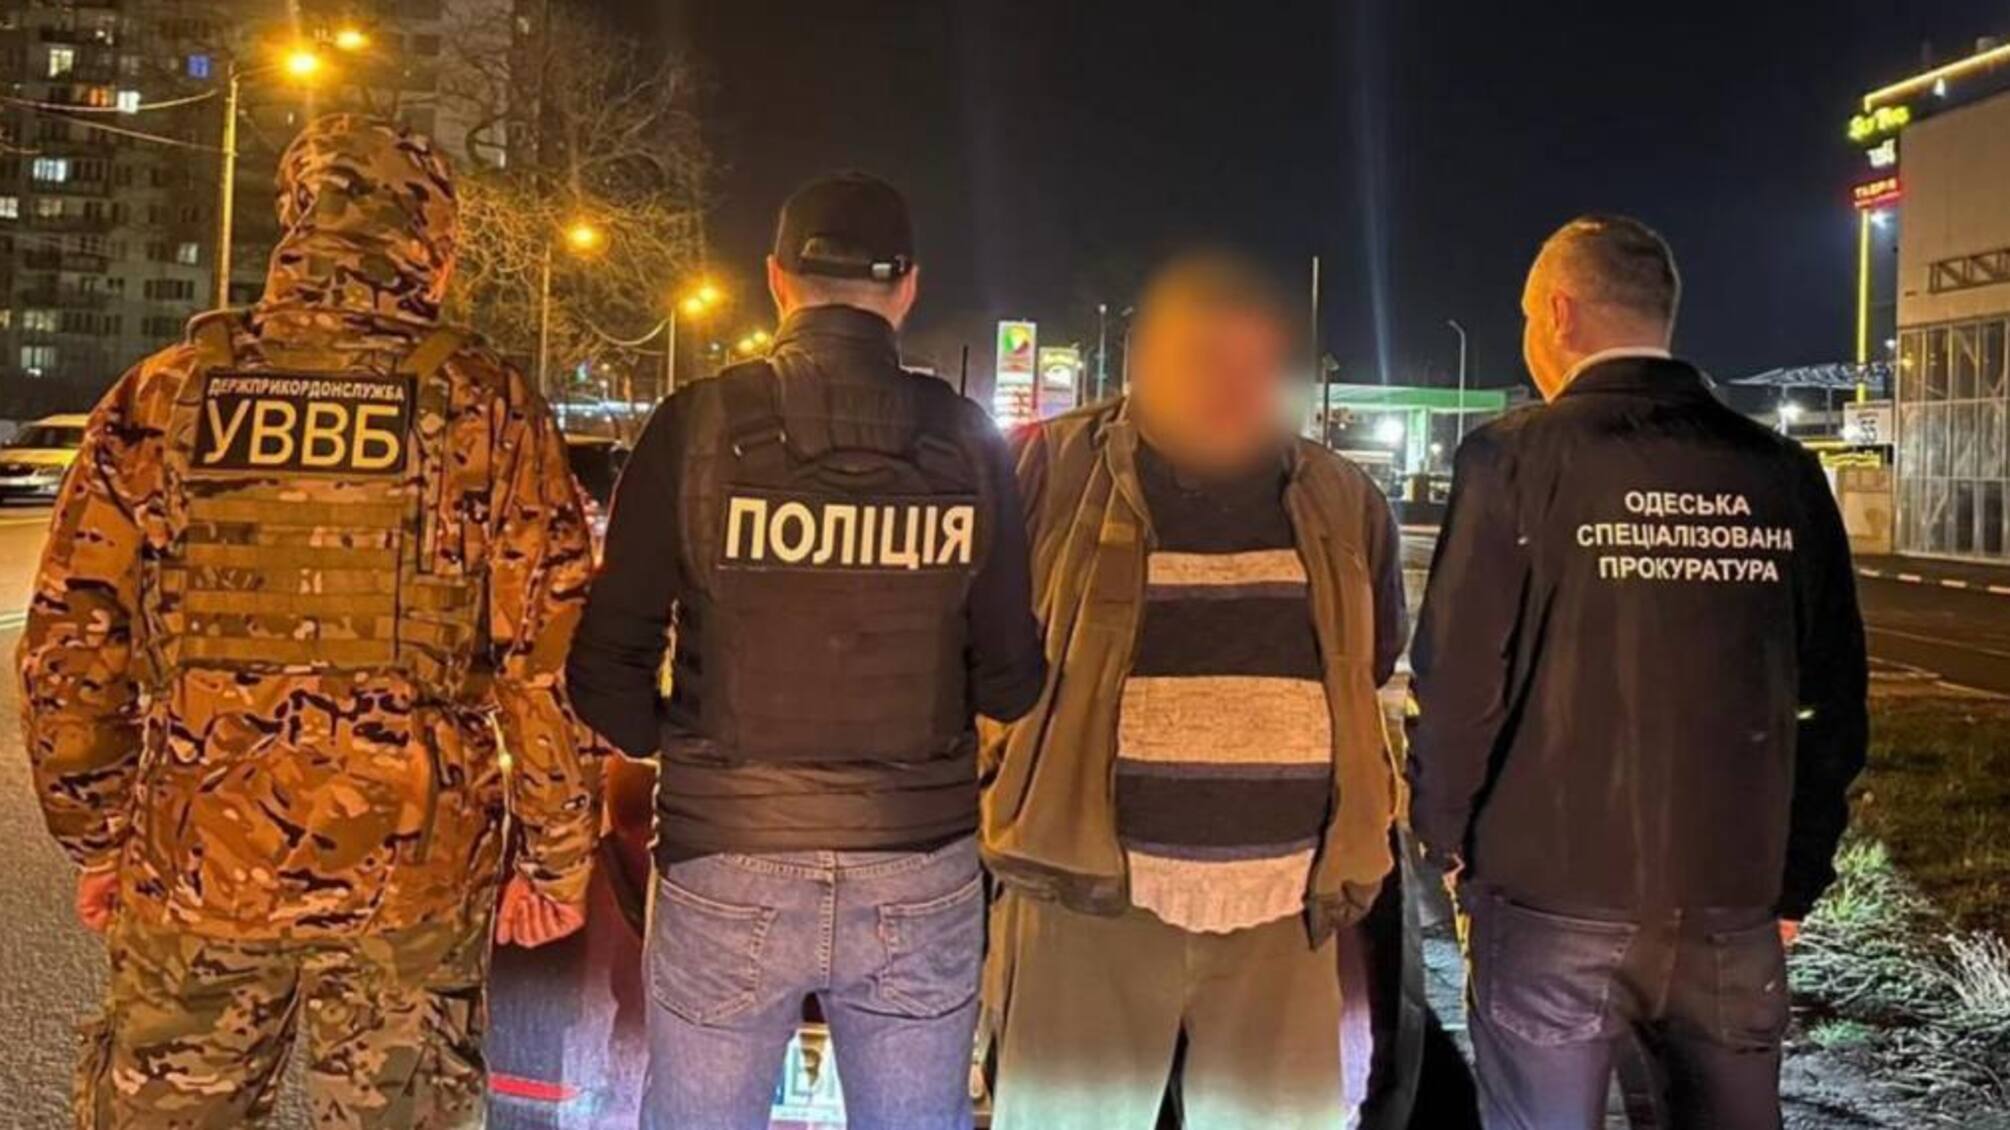 4,5 тыс. долл. за 'освобождение от службы': в Одесской области задержала торговца фальшивыми документами